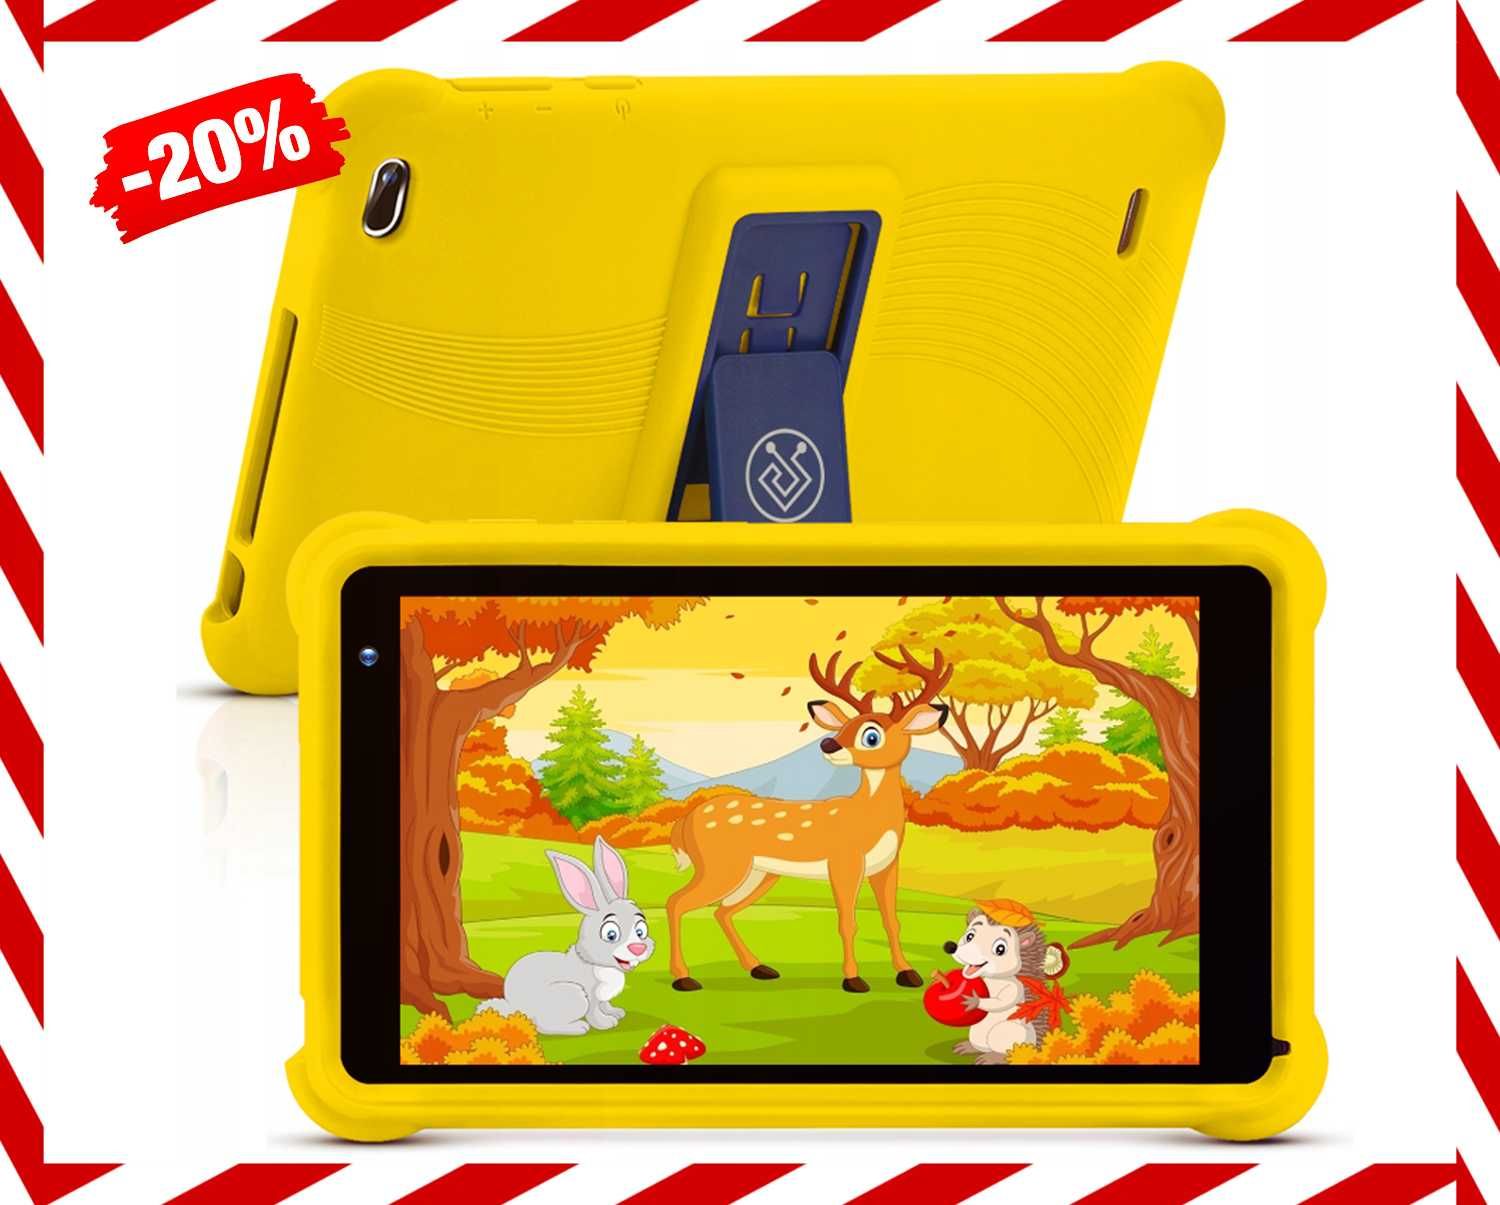 NOWOCZESNY TABLET Dla Dzieci 7" 32GB Żółty Gry WiFi *Wyprzedaż*